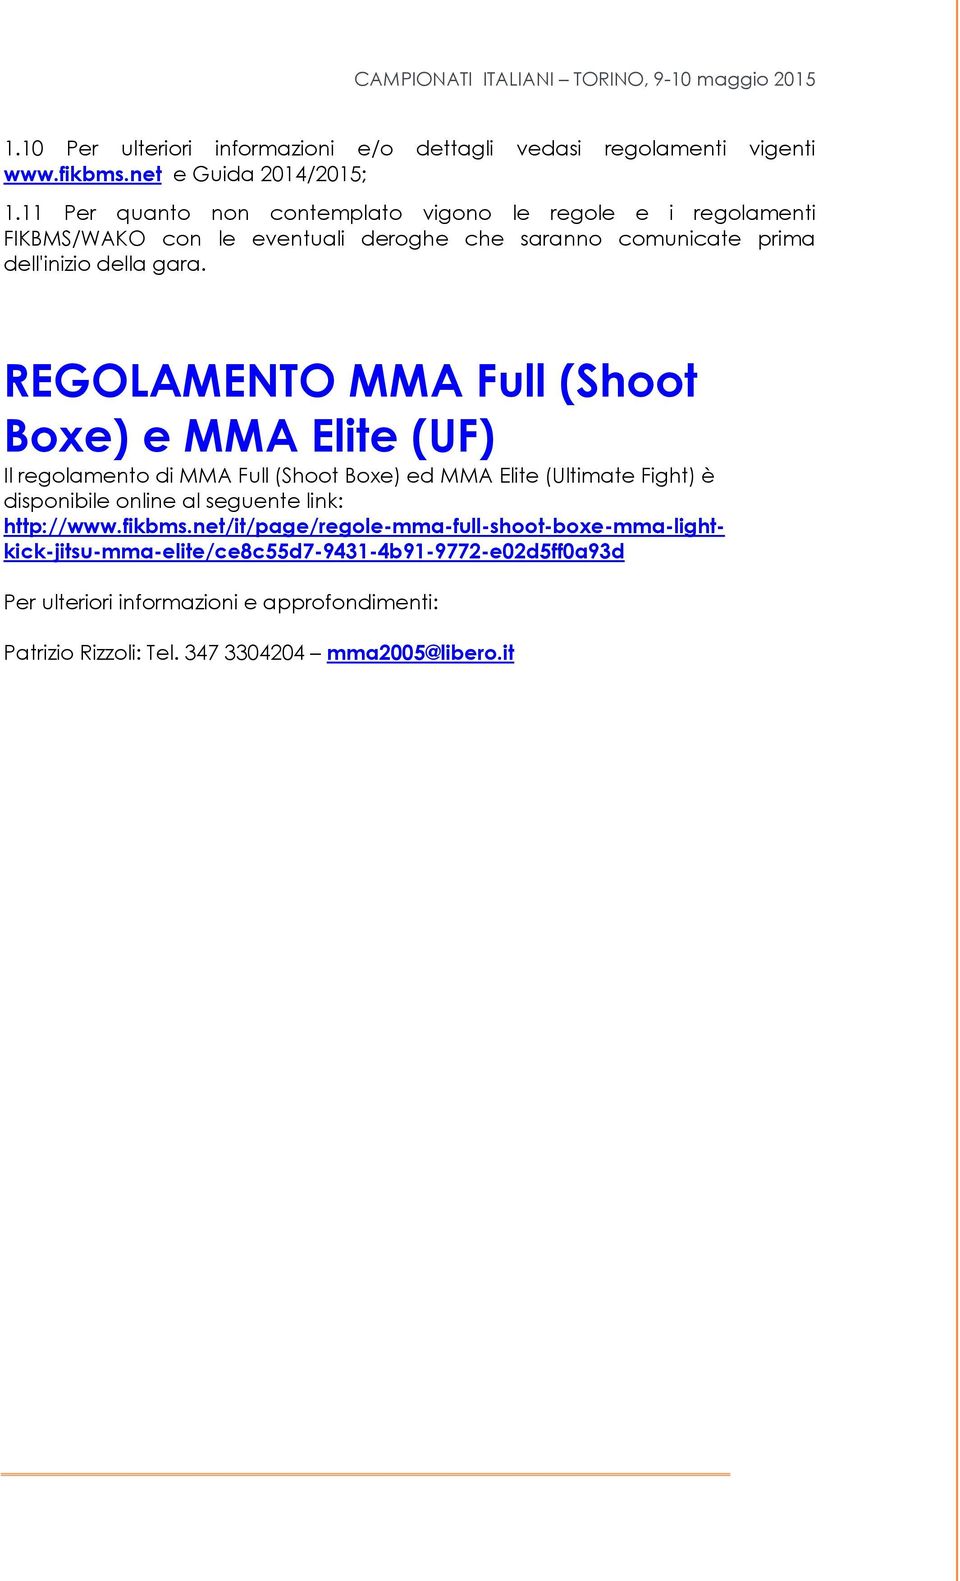 REGOLAMENTO MMA Full (Shoot Boxe) e MMA Elite (UF) Il regolamento di MMA Full (Shoot Boxe) ed MMA Elite (Ultimate Fight) è disponibile online al seguente link: